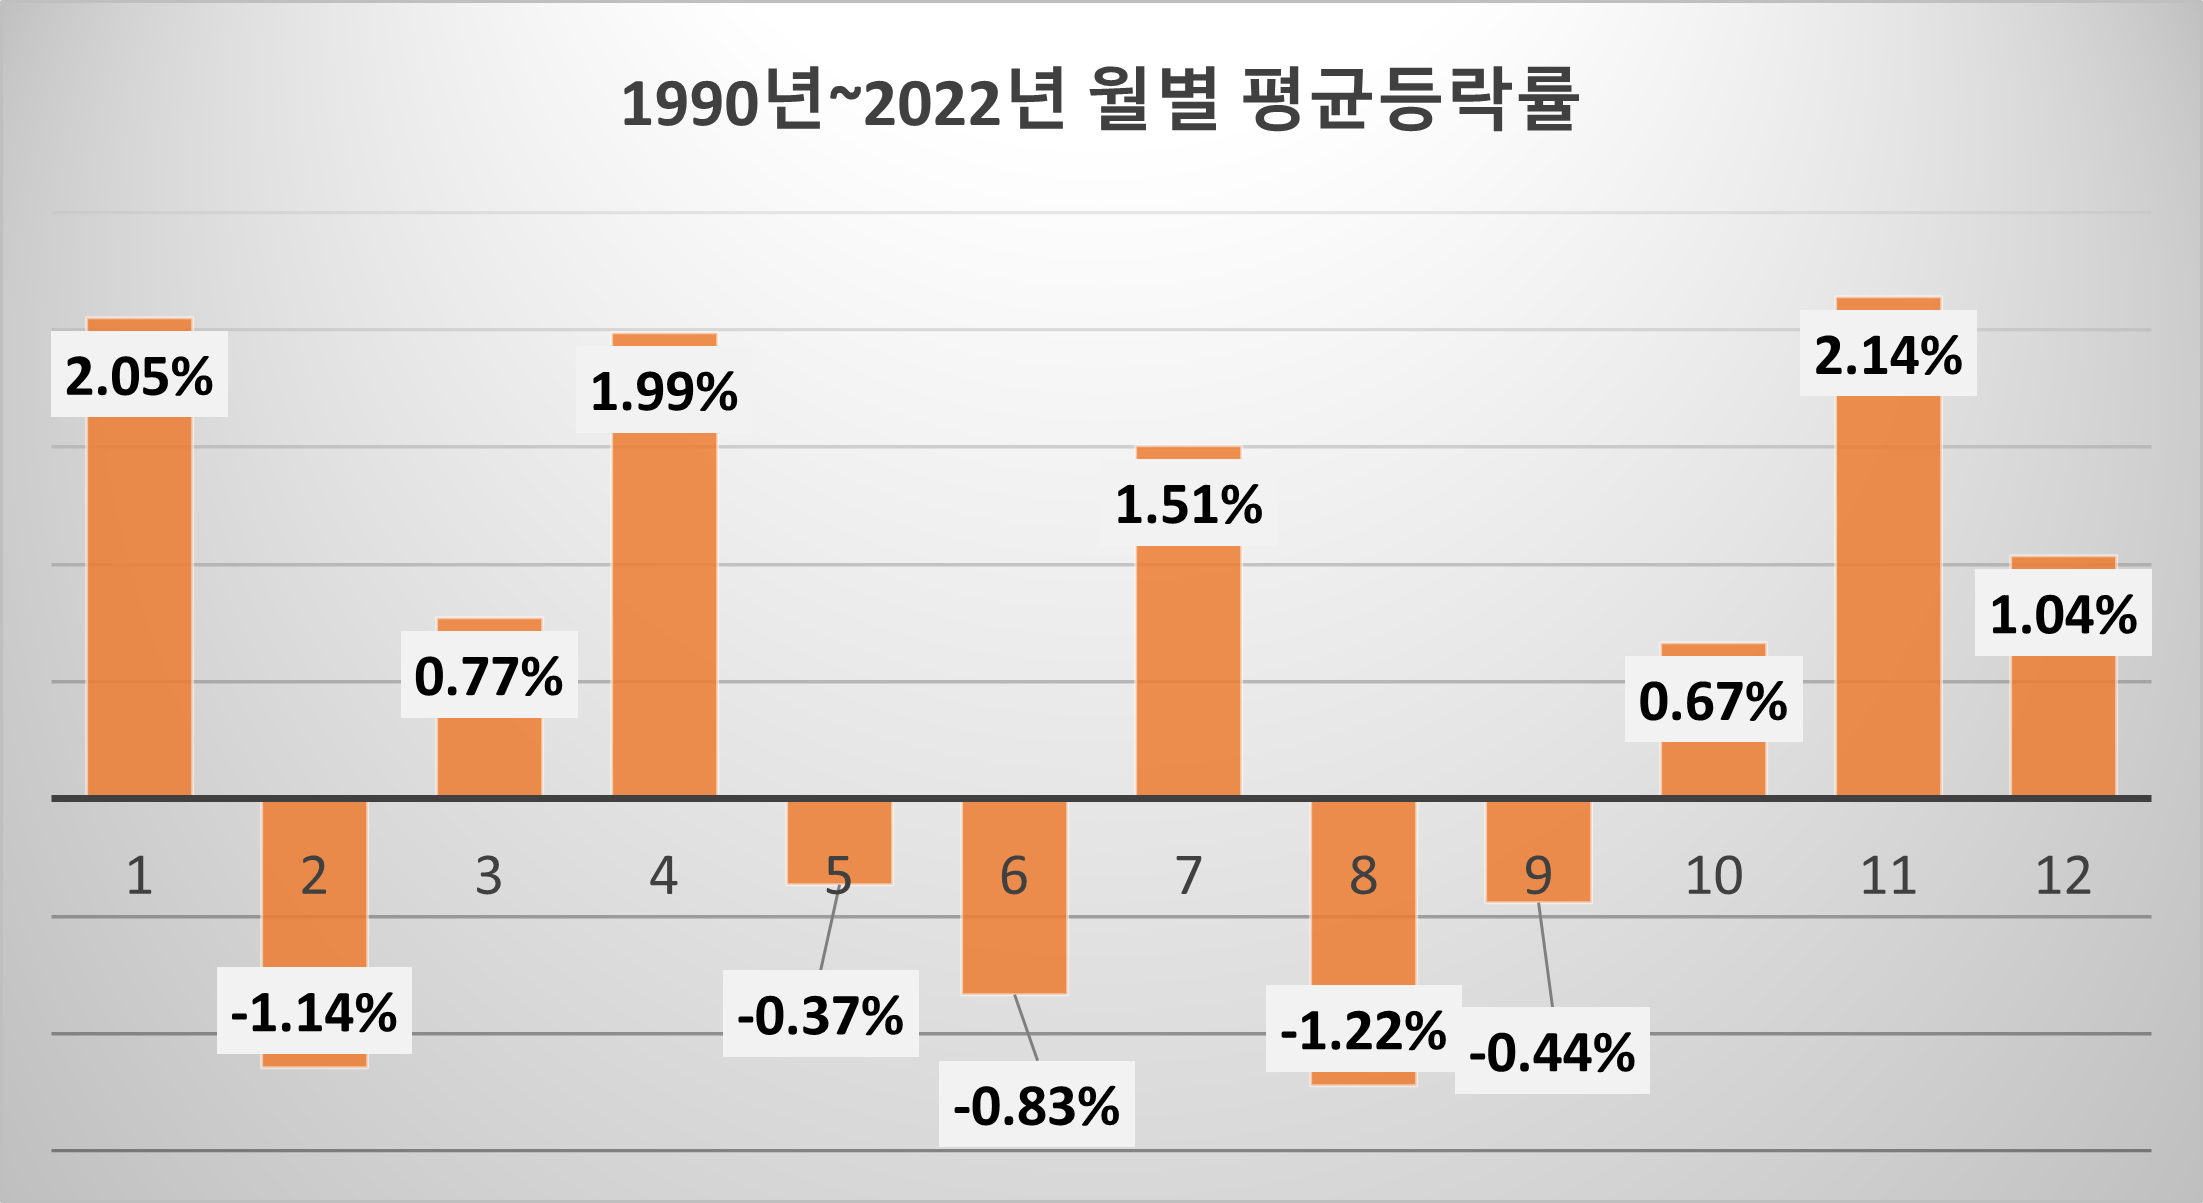 1990년부터 2022년까지 코스피 지수의 월평균 등락률. 자료 분석 : lovefund이성수